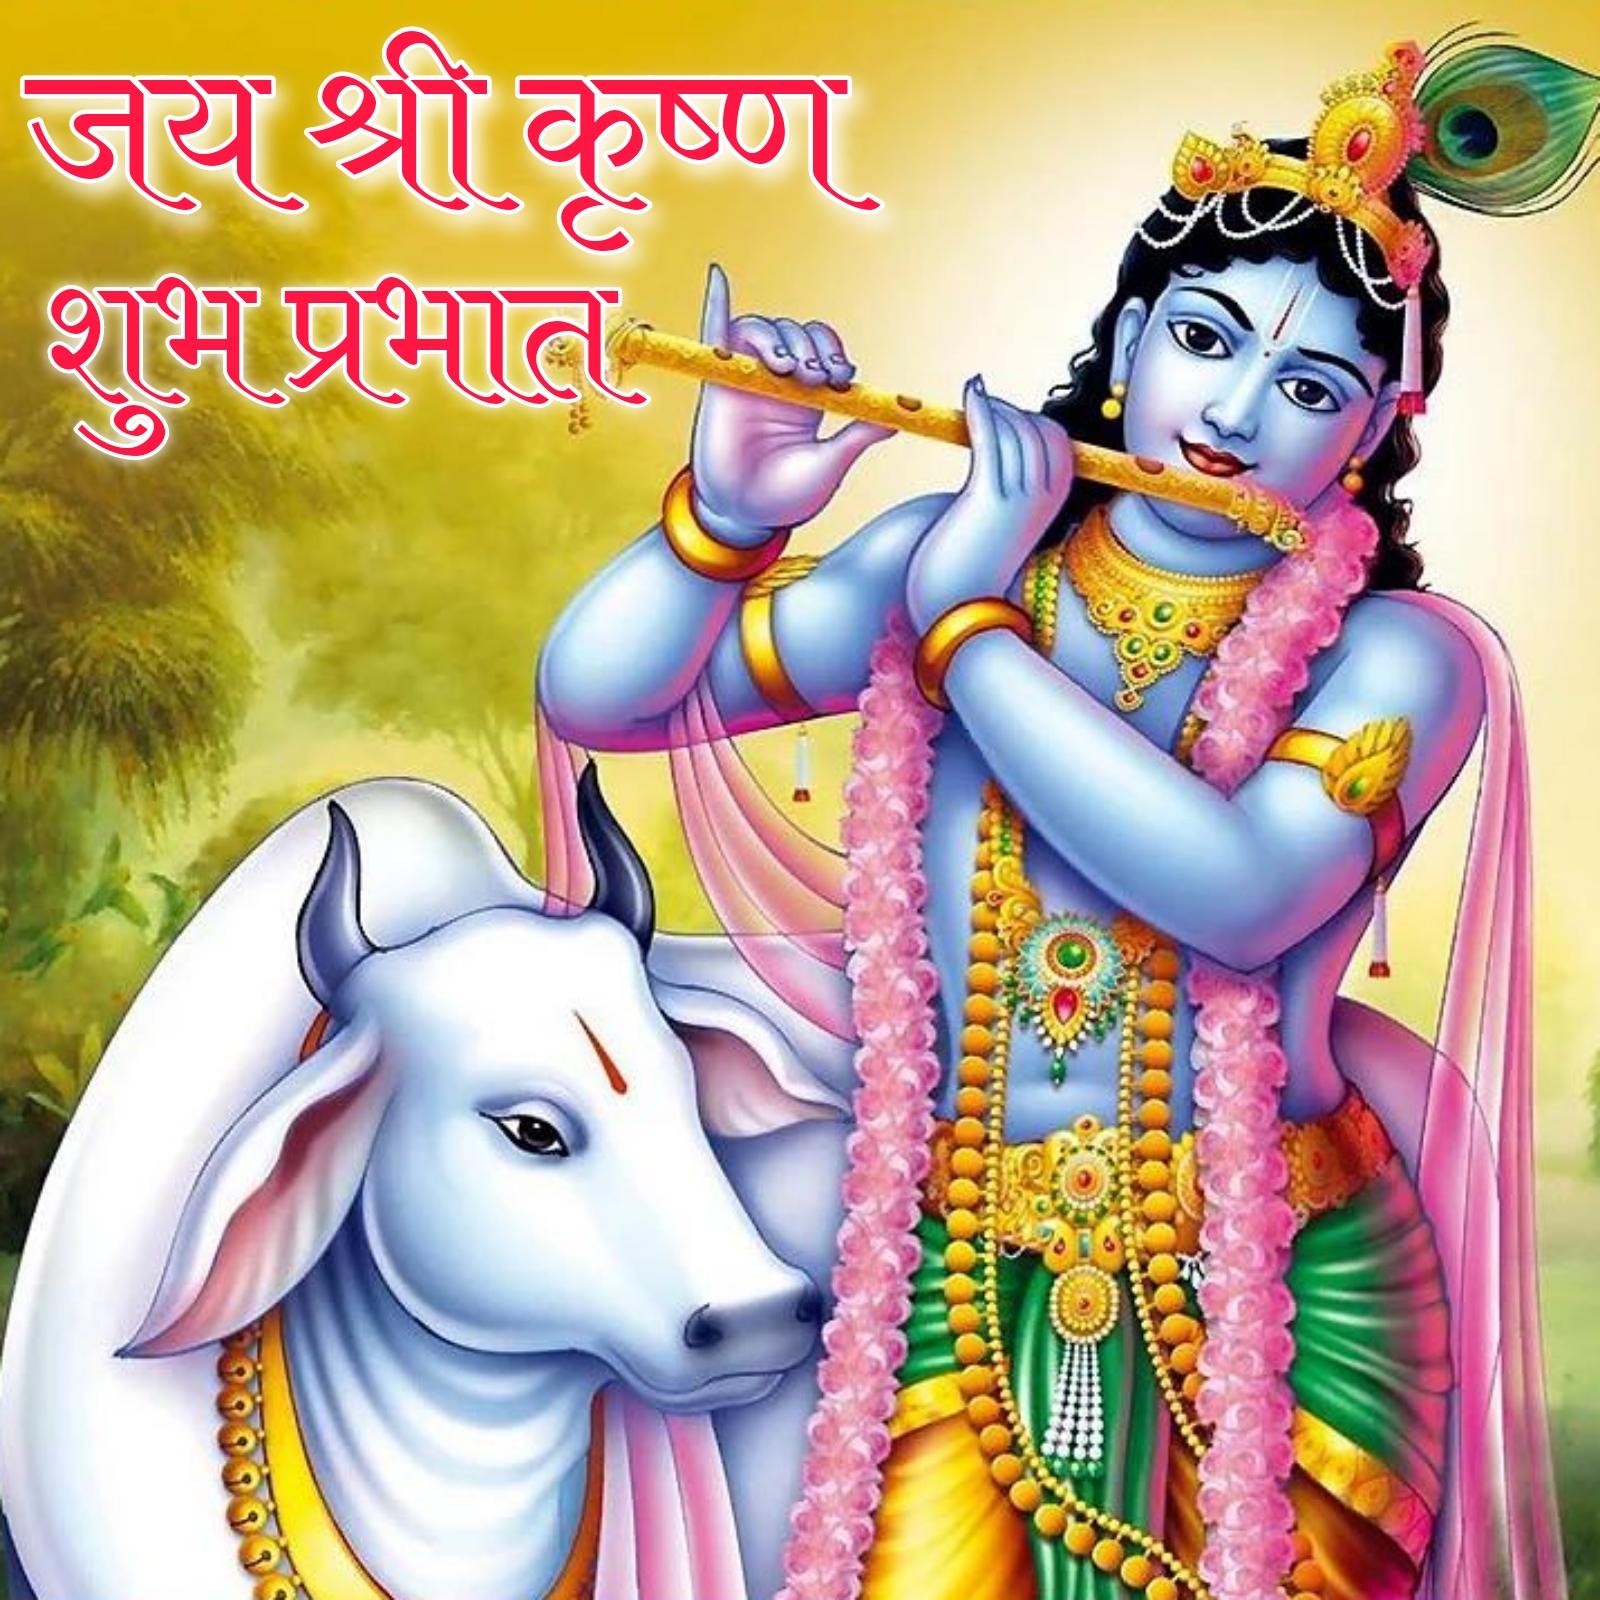 Jai Shri Krishna Good Morning Images in Hindi - ShayariMaza